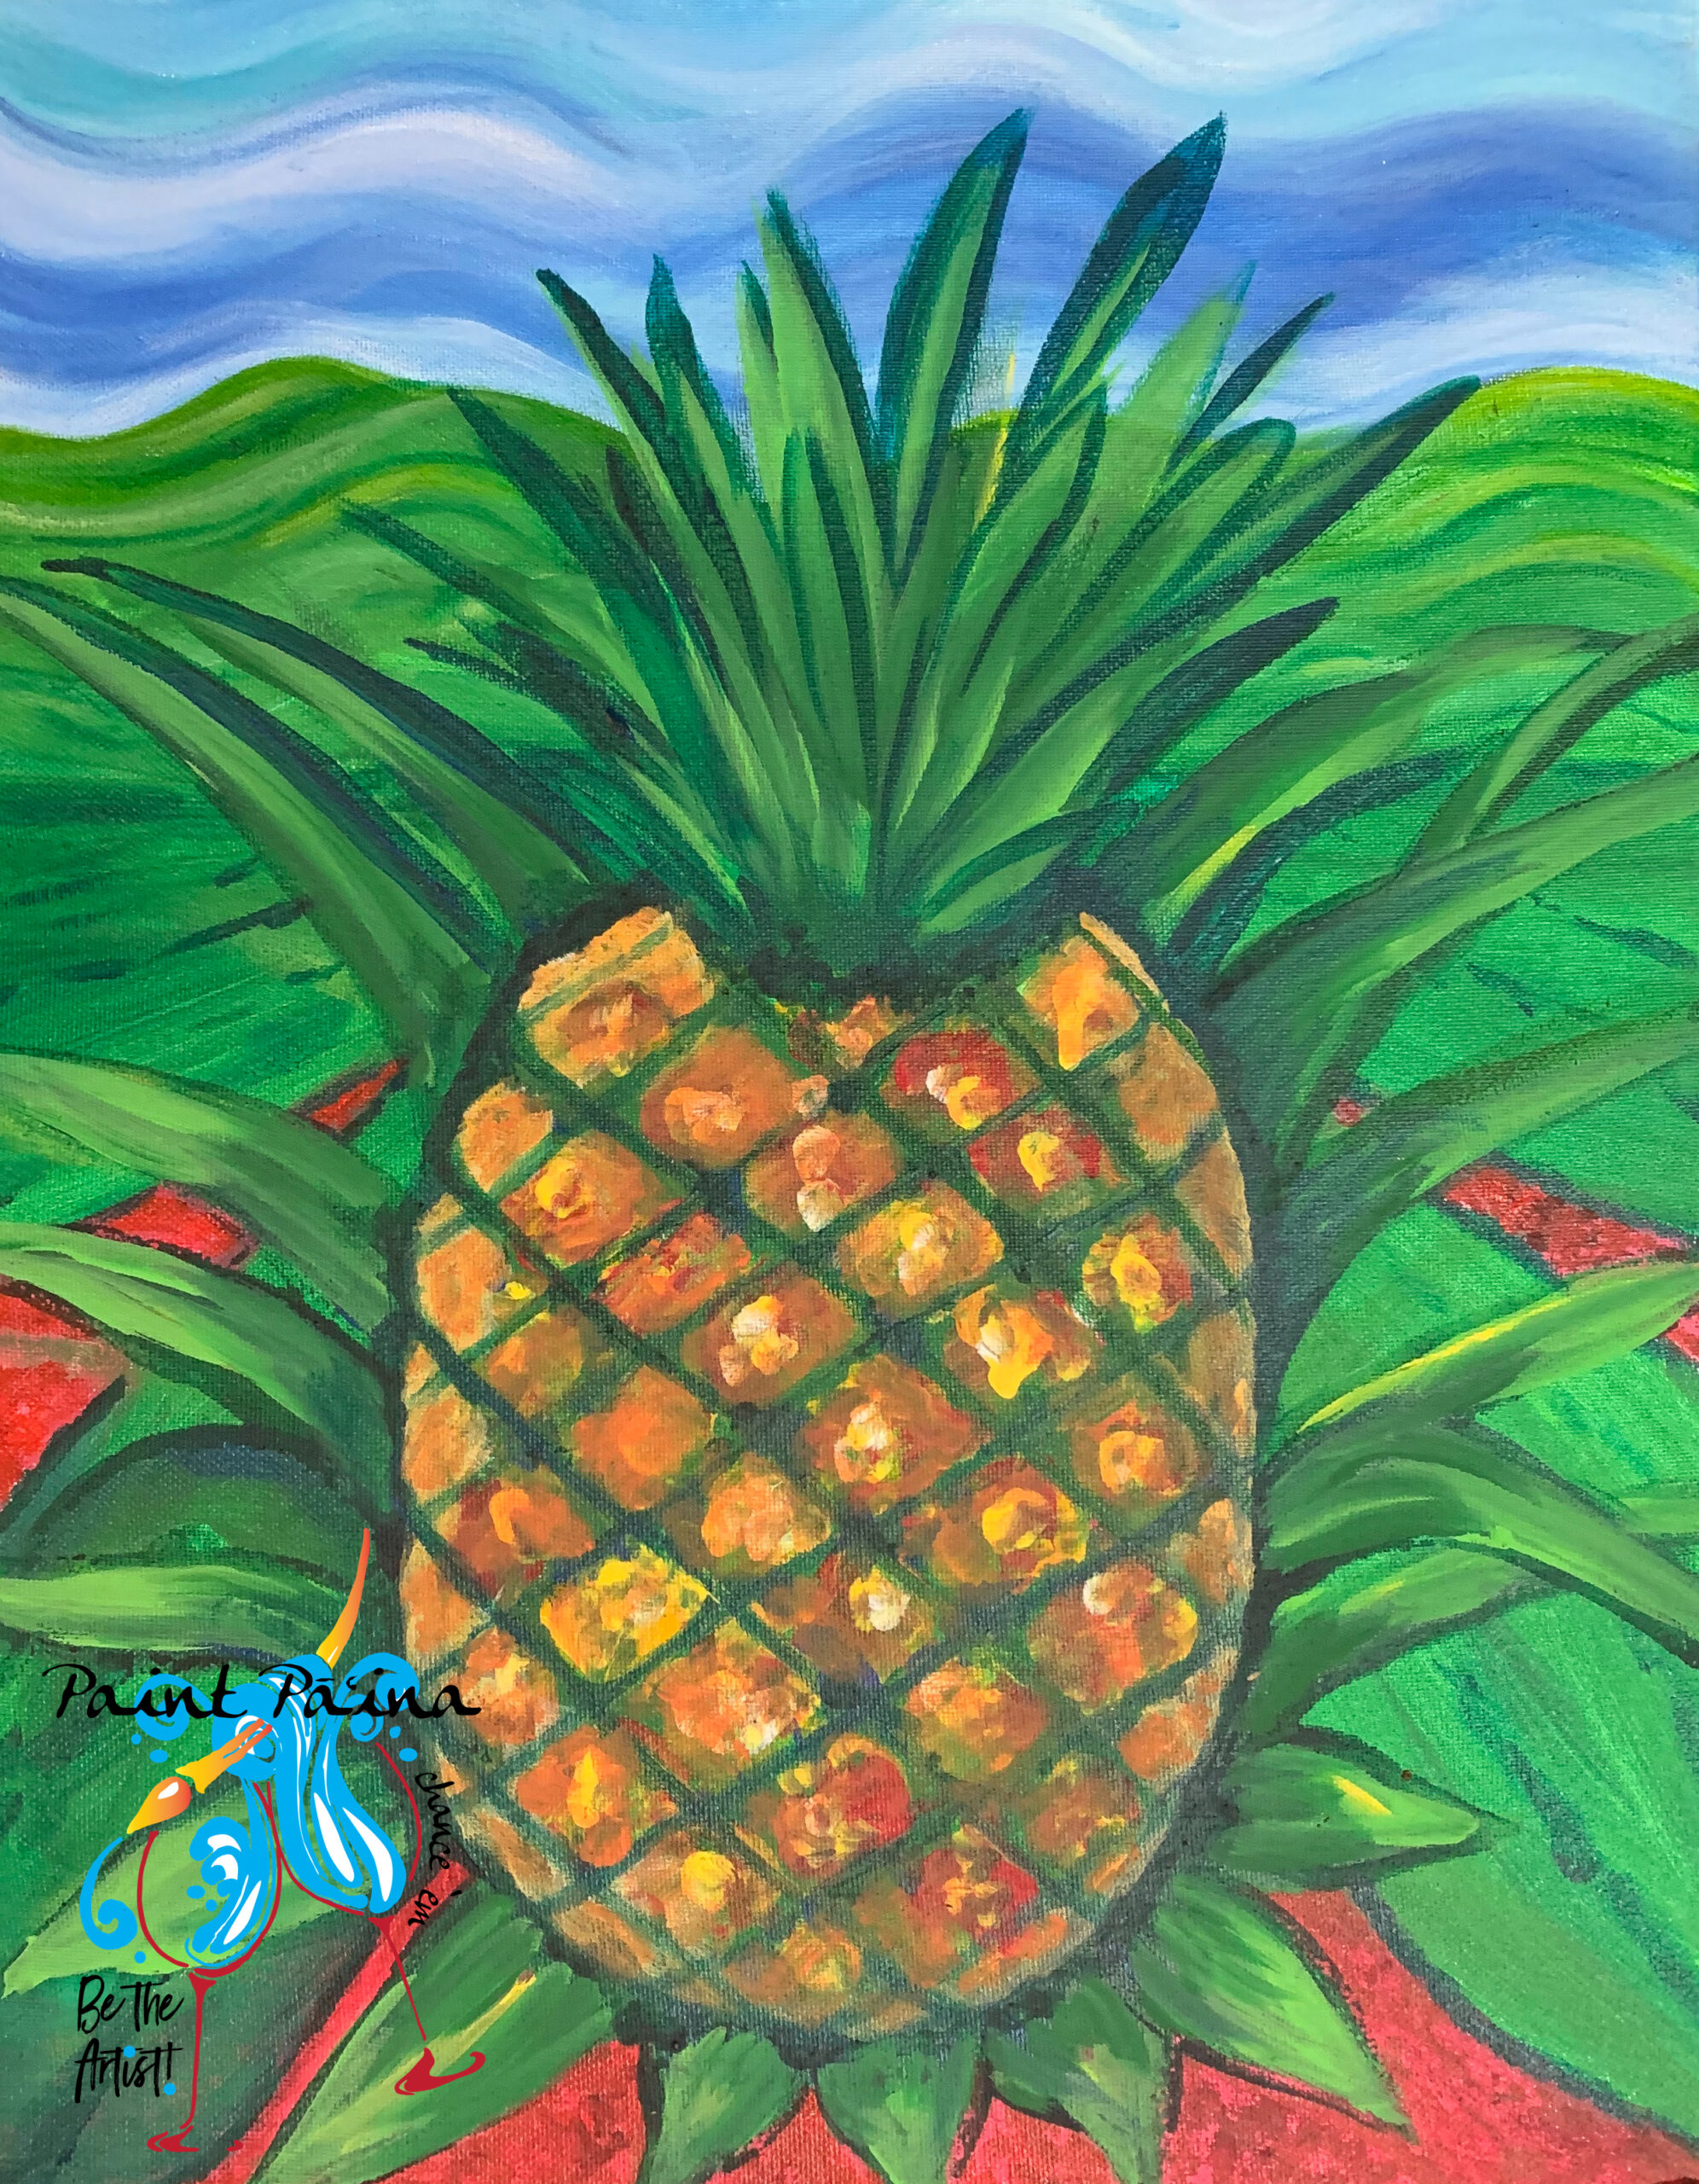 Paint Pāʻina, Paint Party